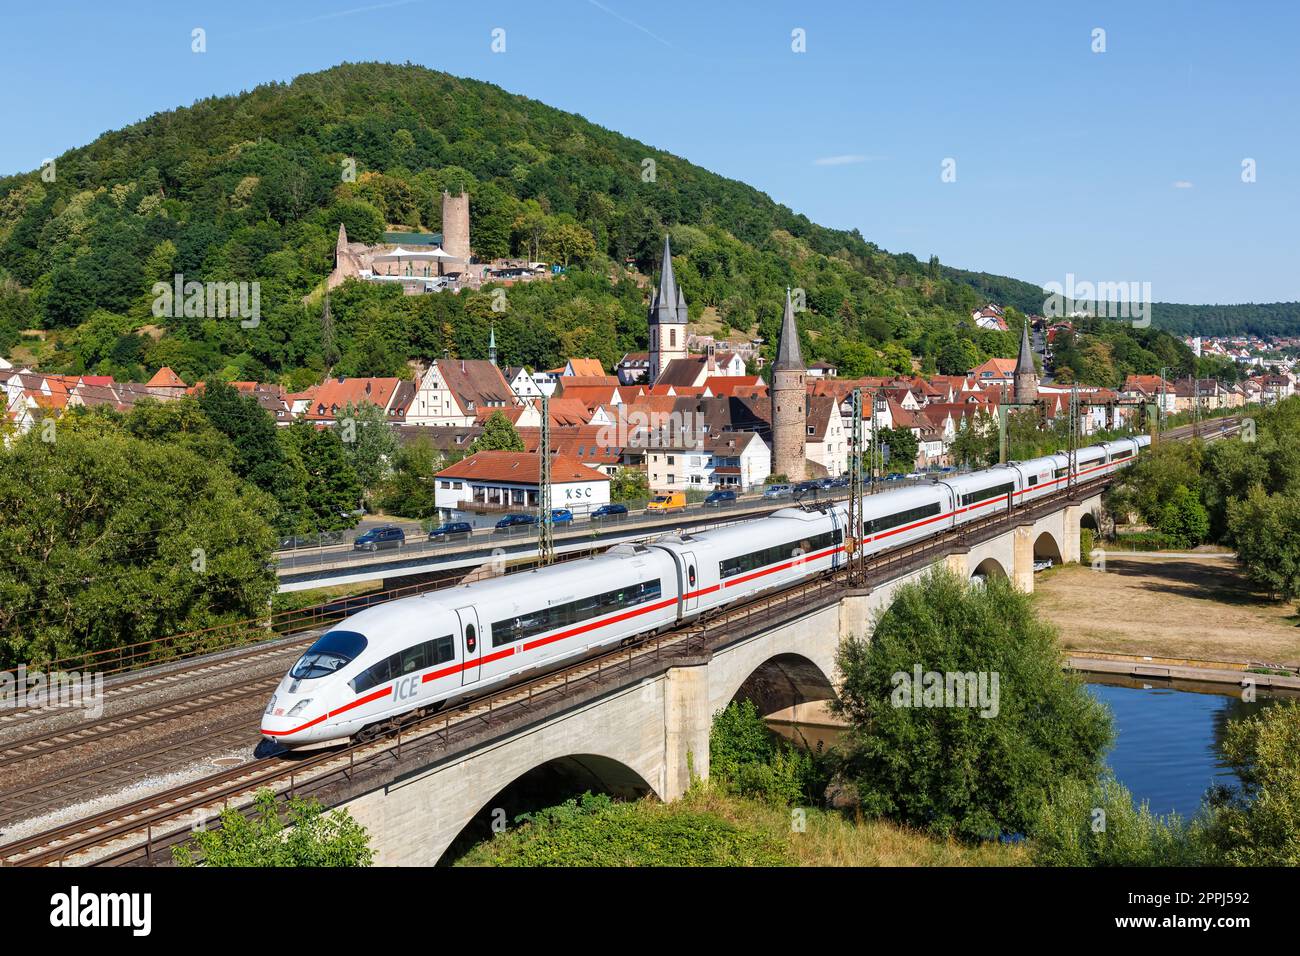 ICE 3 of Deutsche Bahn DB high-speed train railway in Gemuenden am Main, Germany Stock Photo